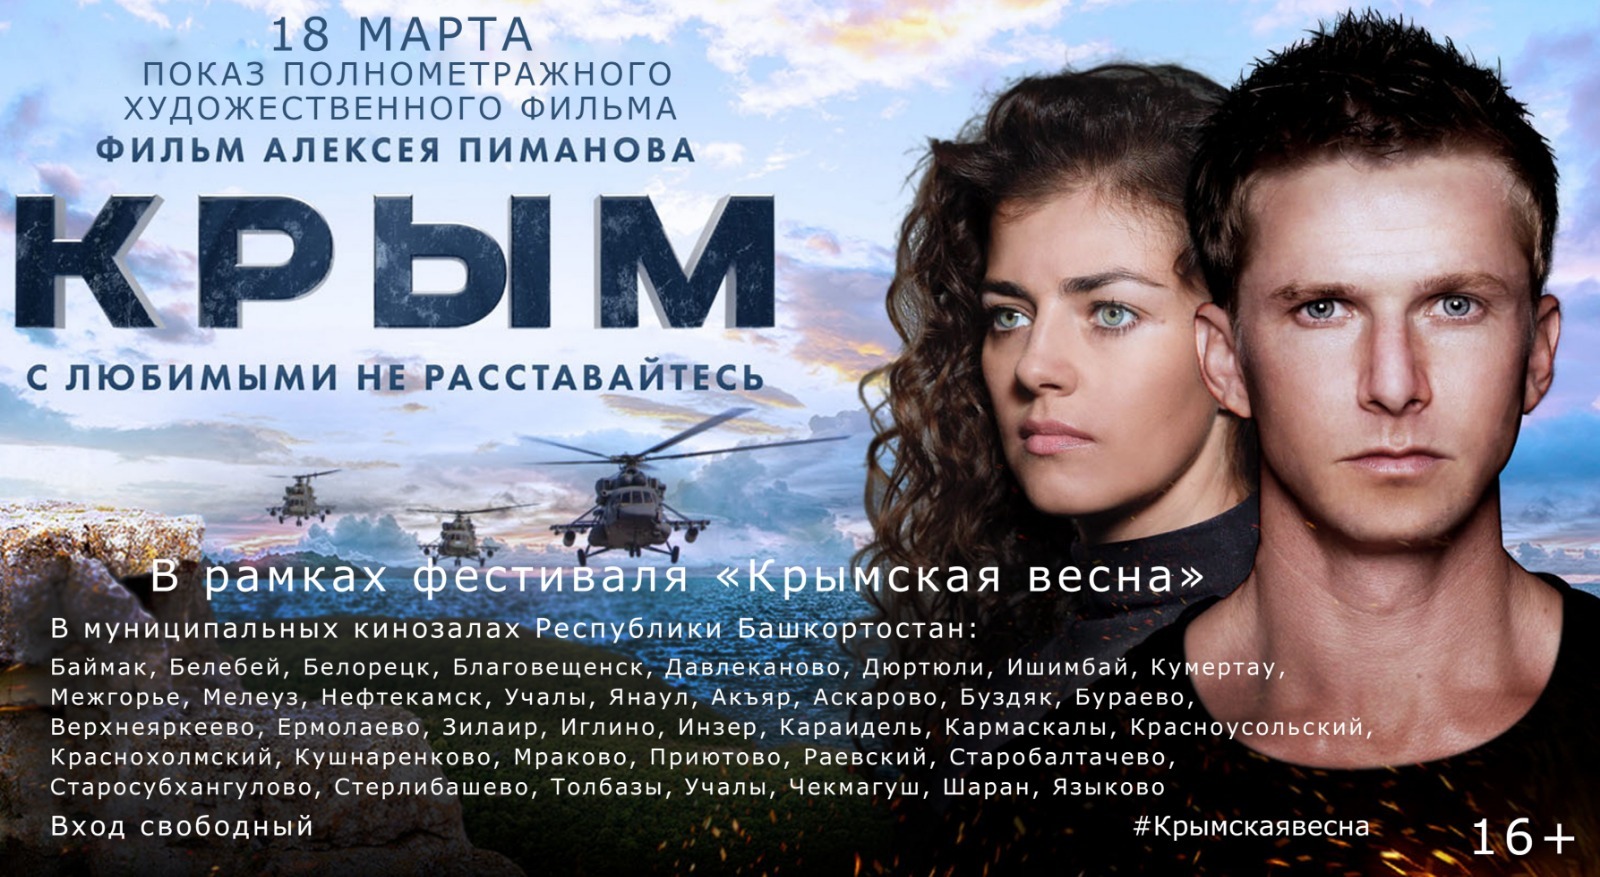 В Башкирии проходит фестиваль «Крымская весна»